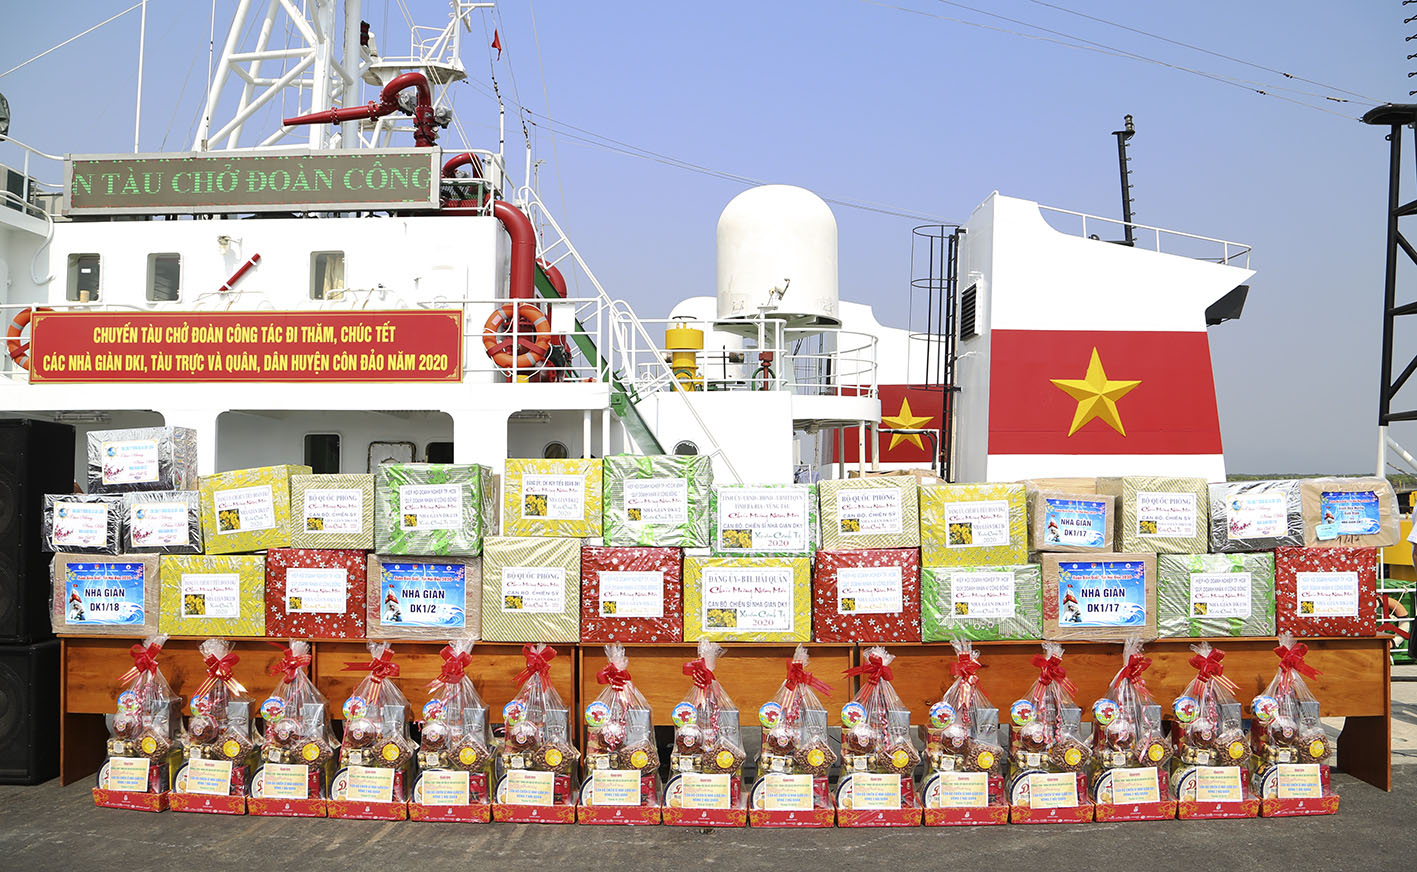 Những thùng quà Tết được tập kết tại Quân cảng Vùng 2 Hải quân chuẩn bị lên tàu ra khơi;